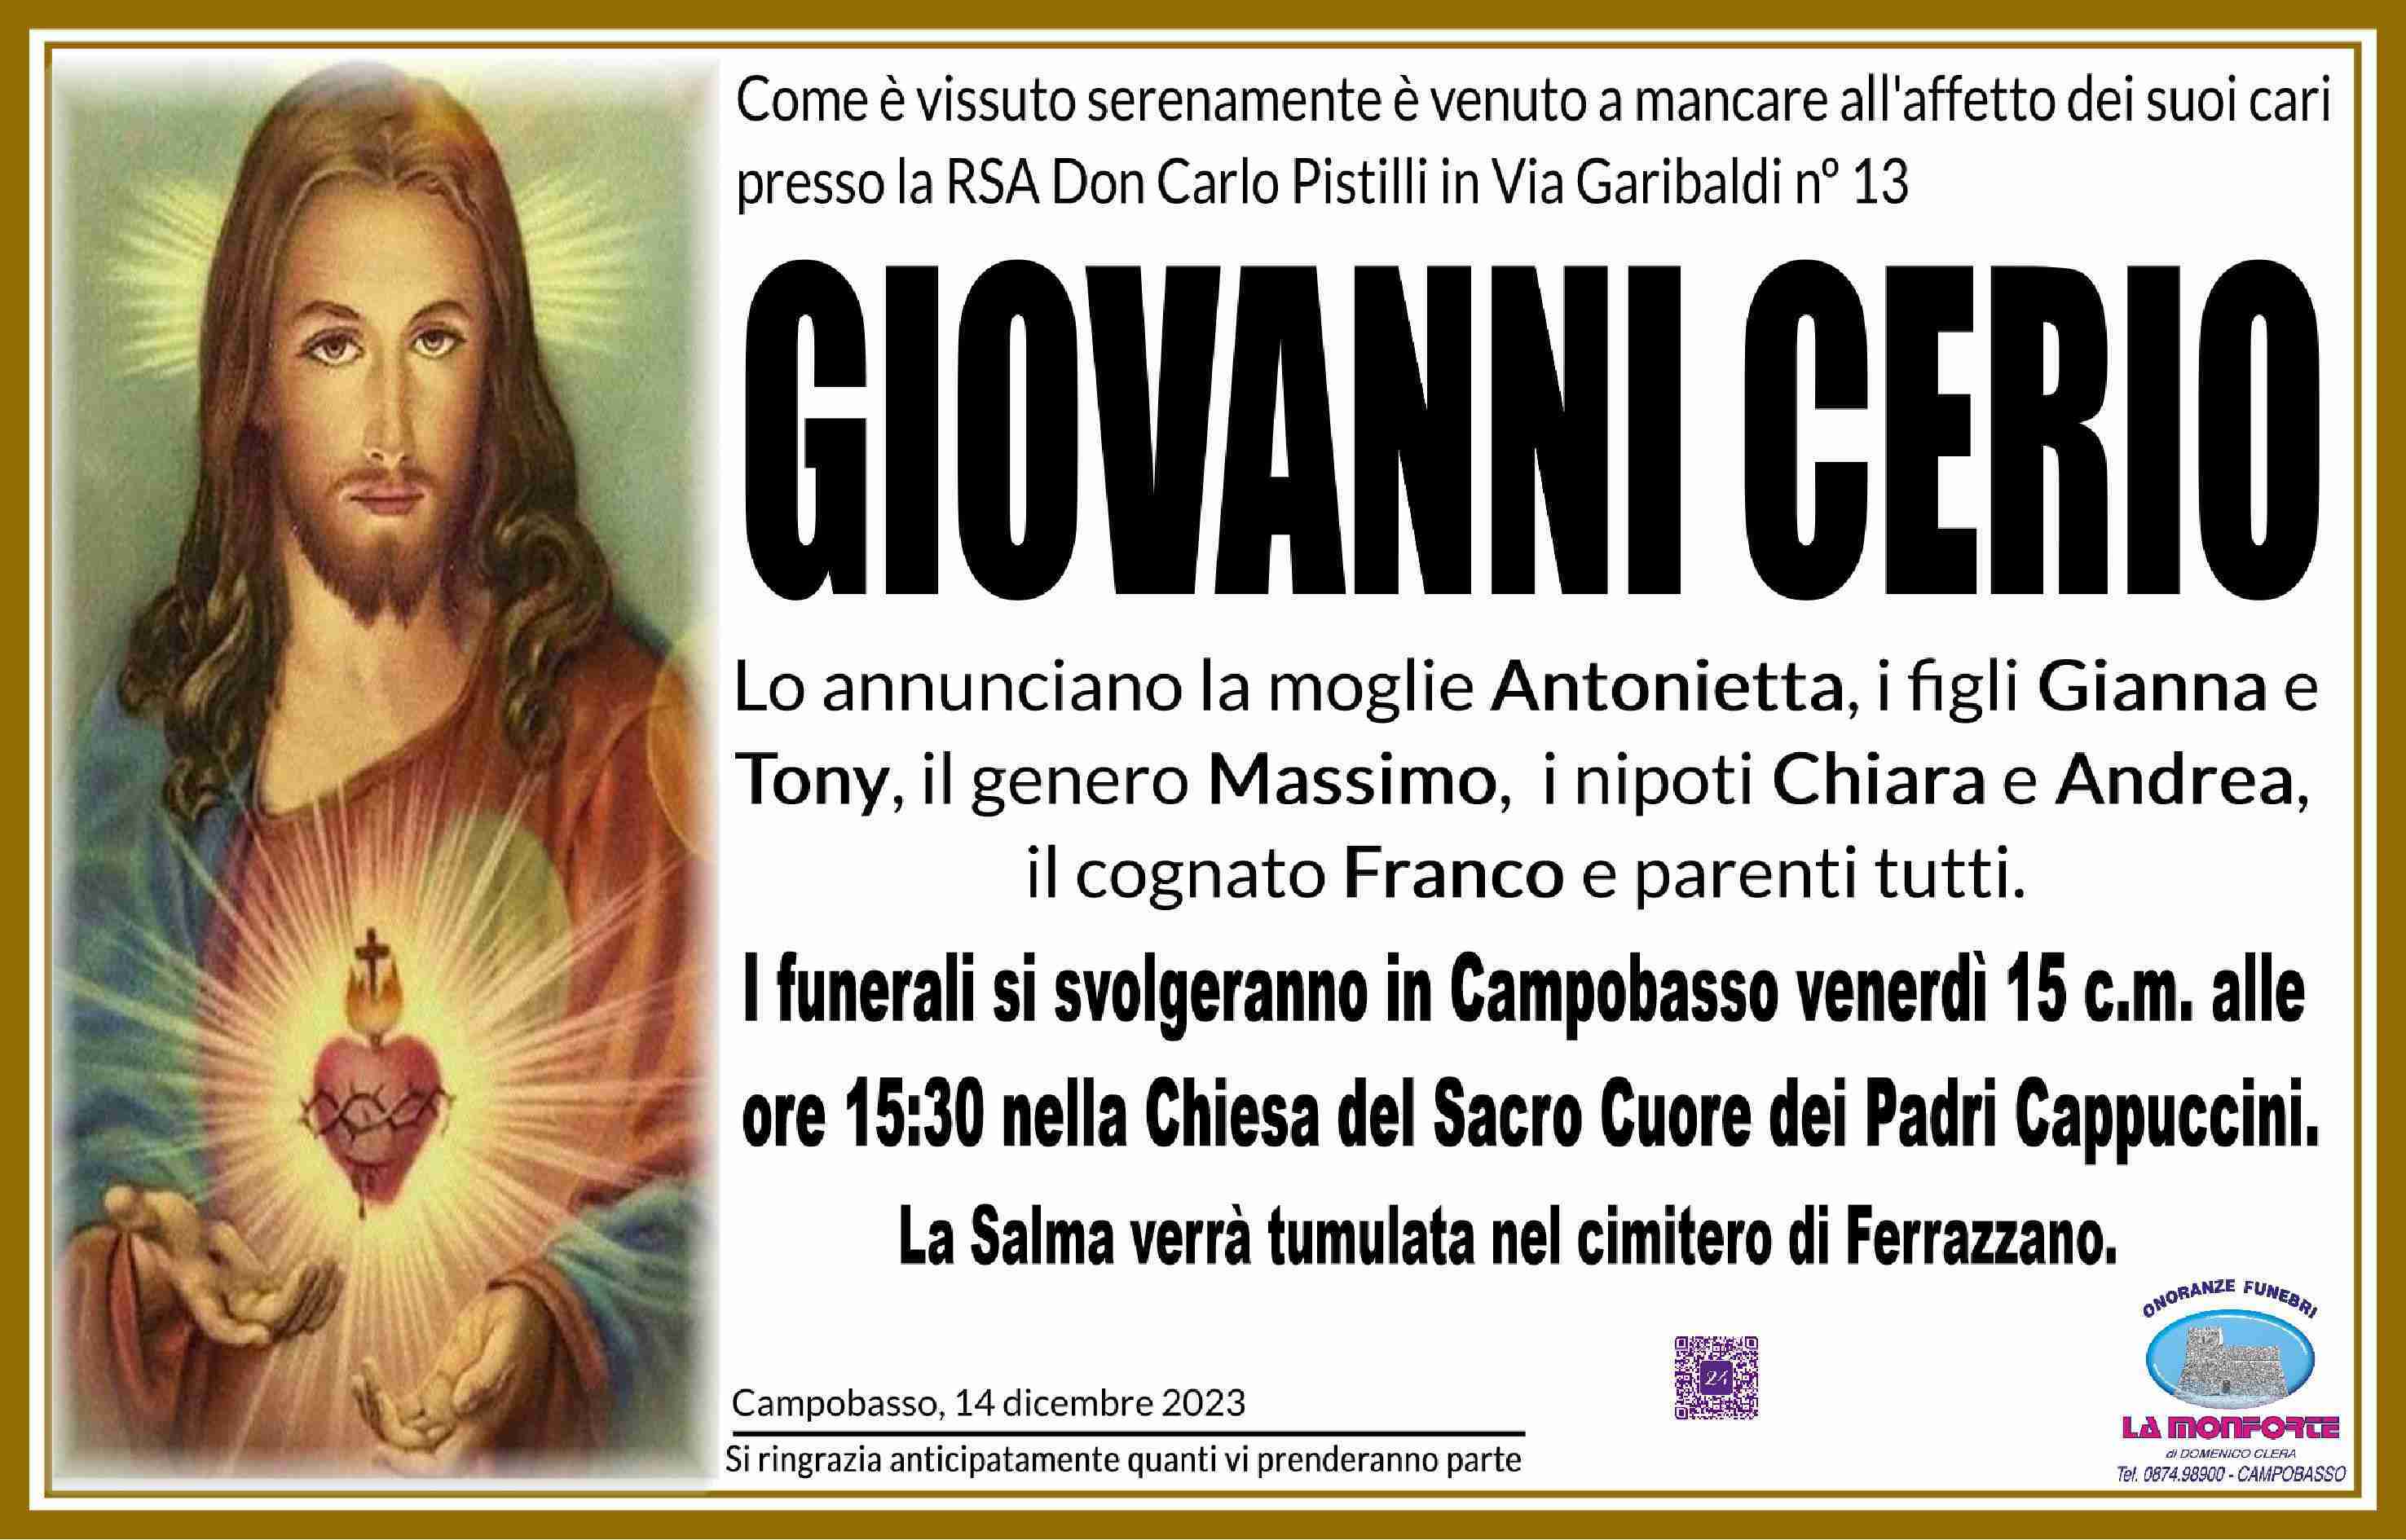 Giovanni Cerio